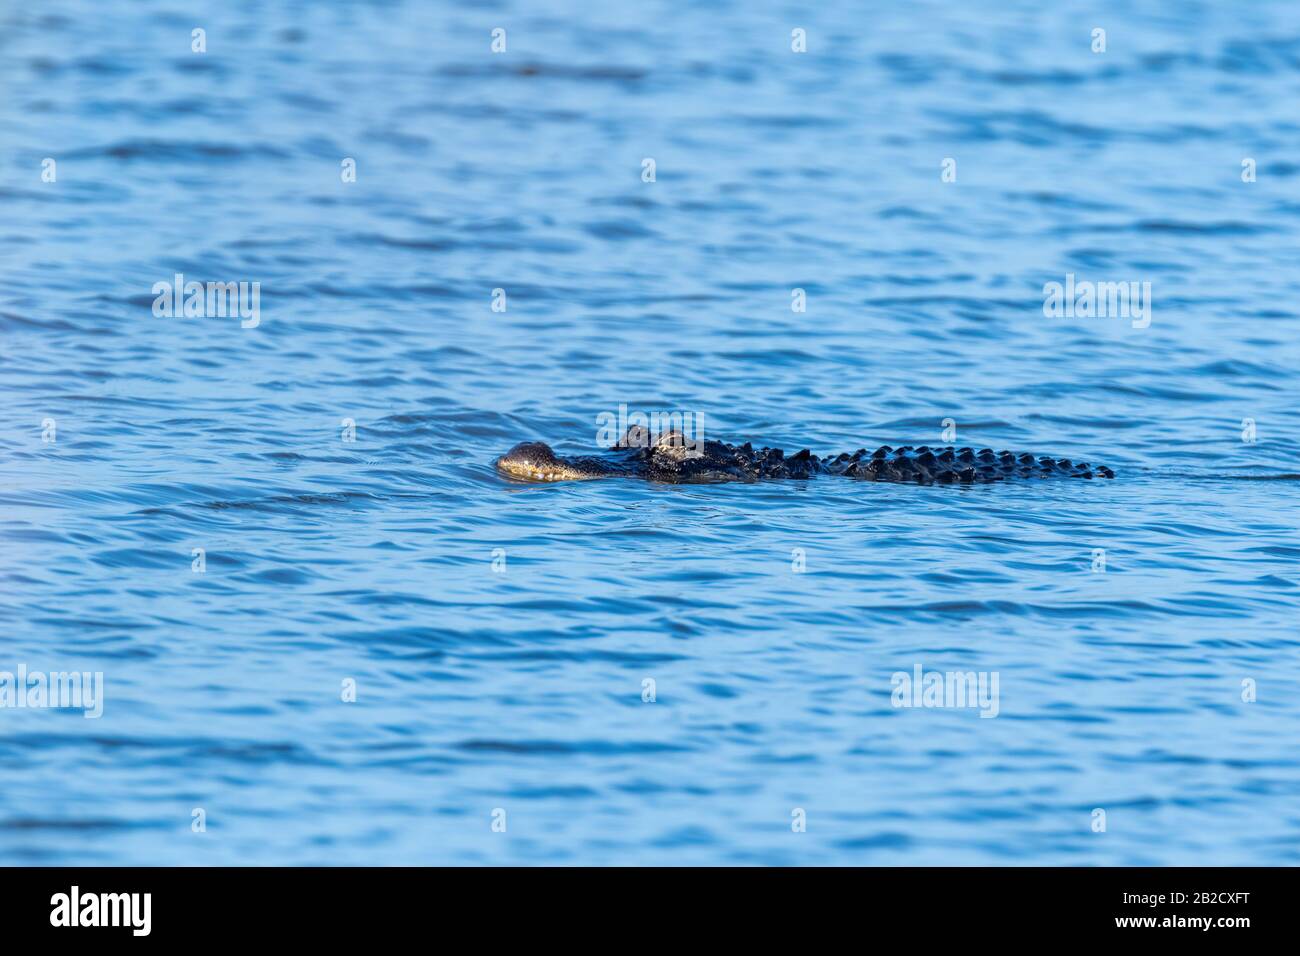 Un alligatore americano (Alligator missisippiensis) è preda nelle acque dell'isola di Merritt, Florida. Foto Stock